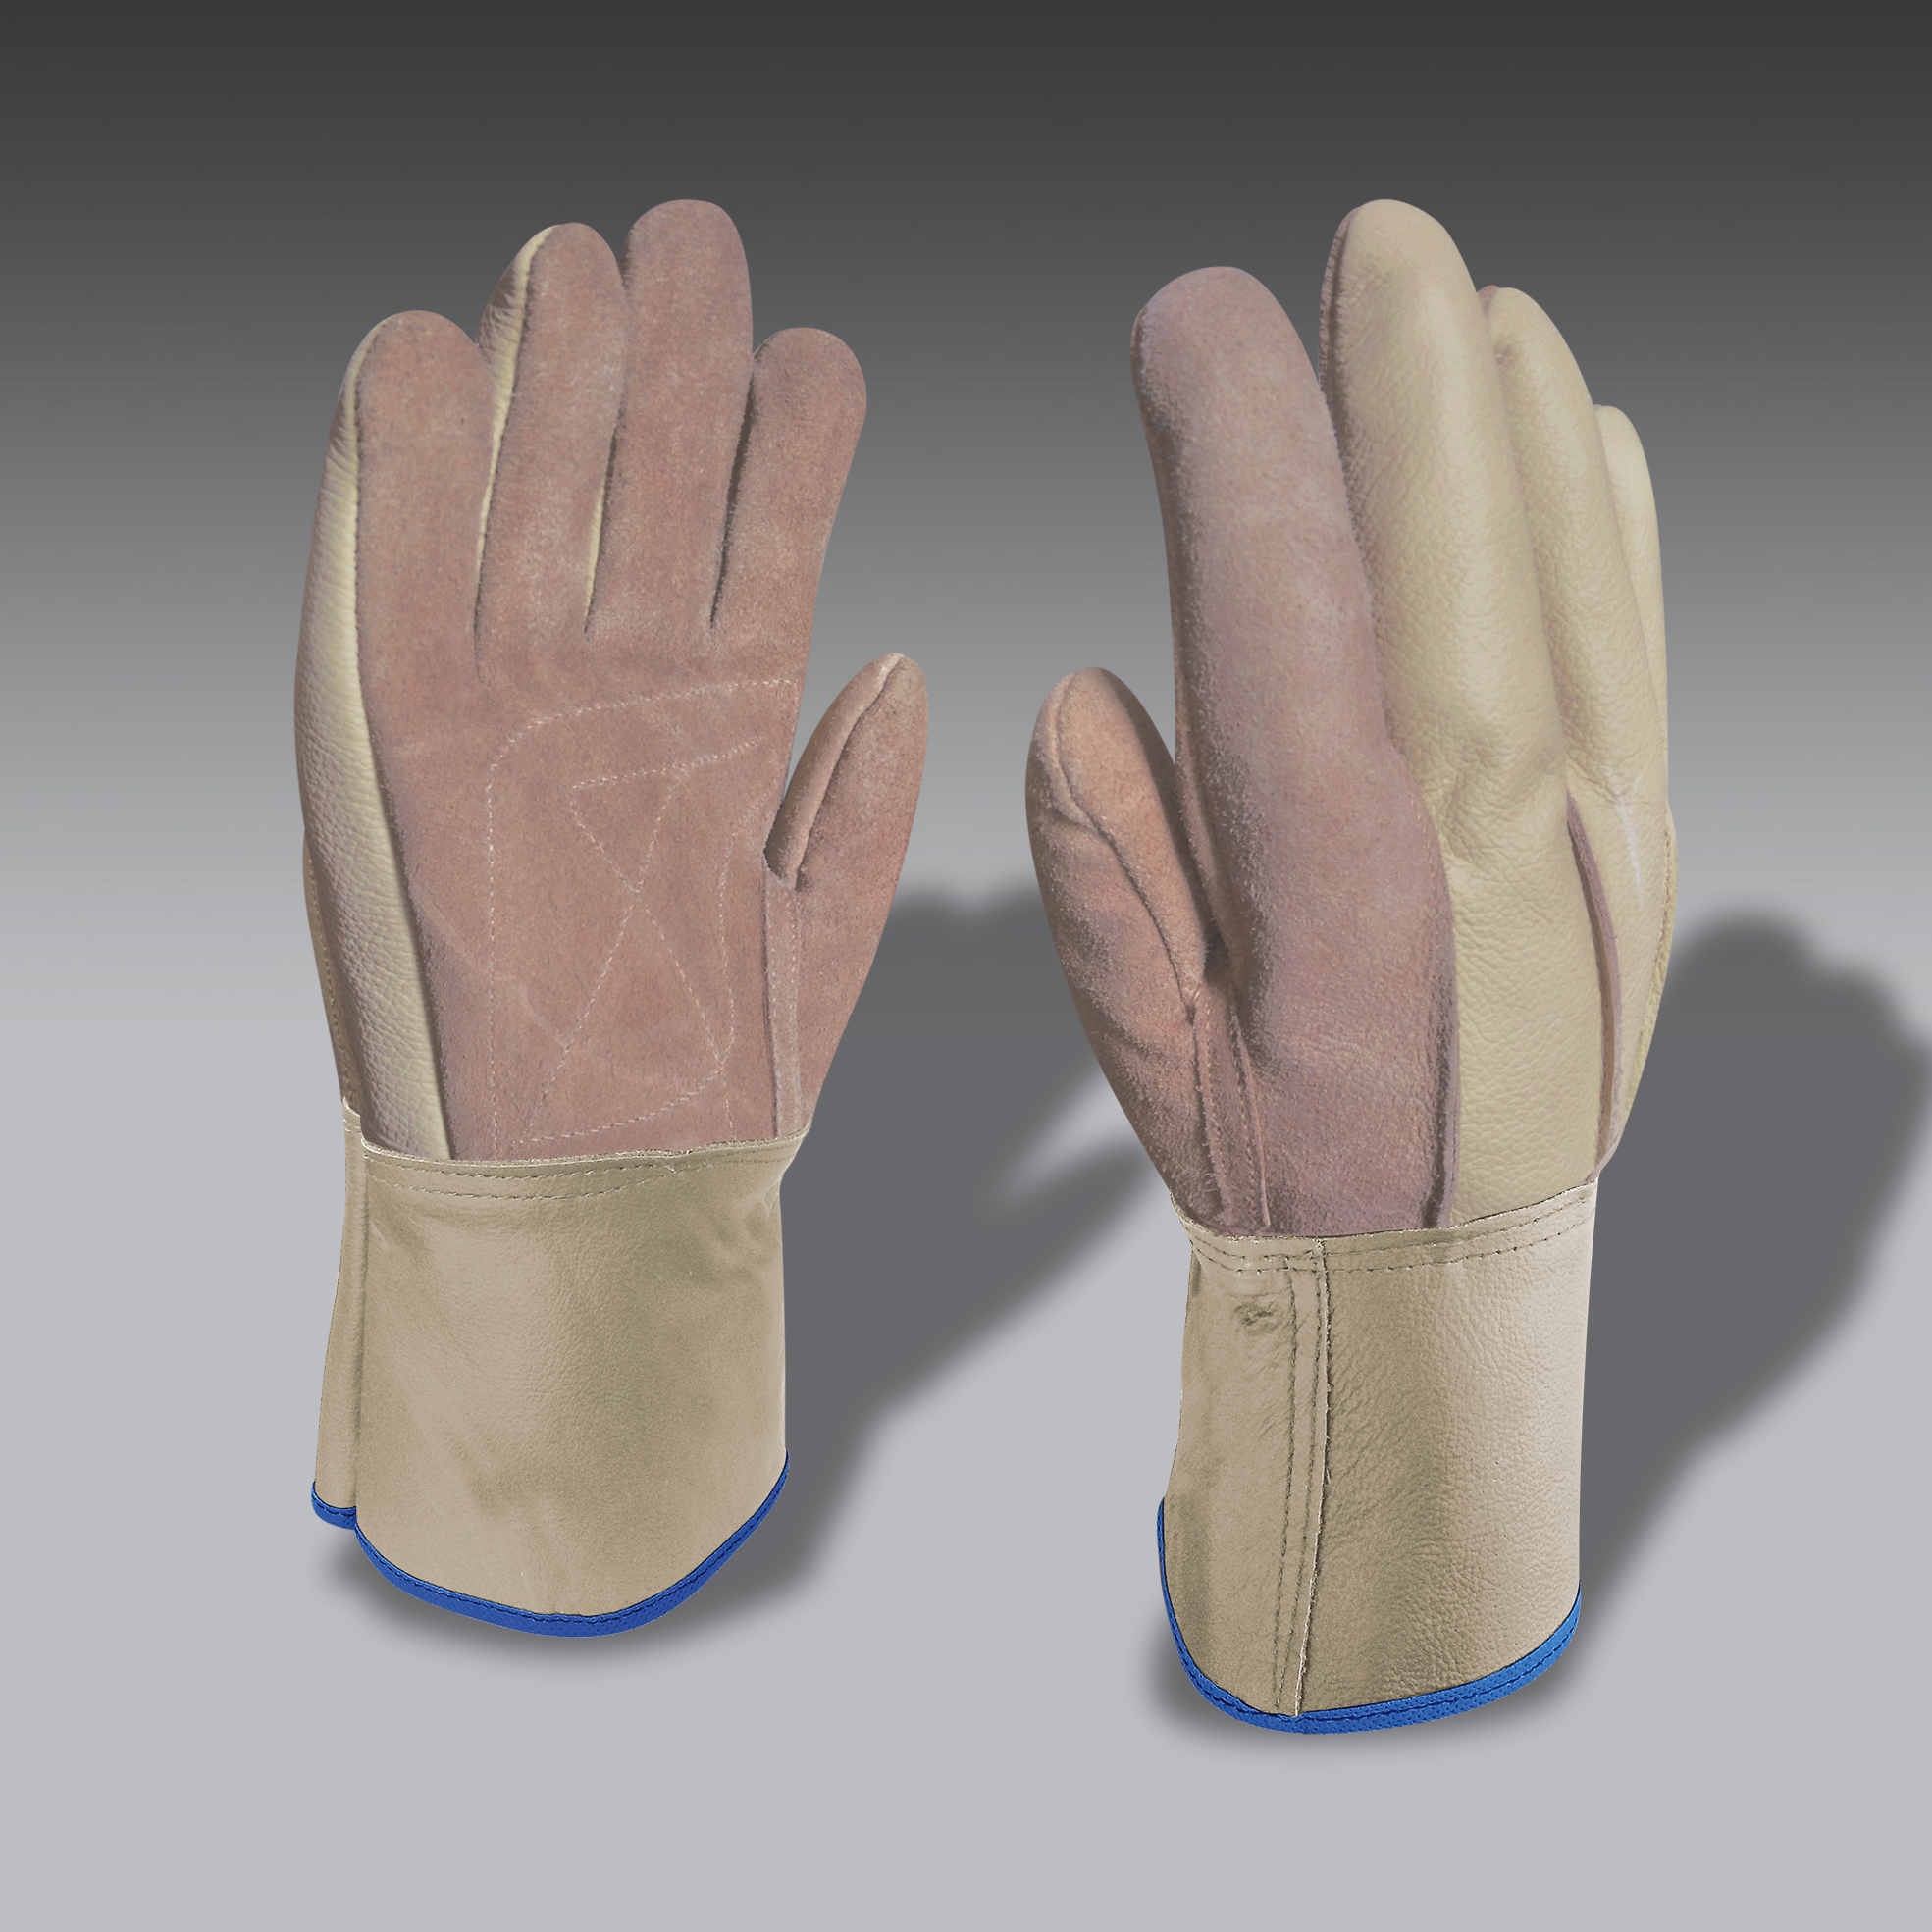 guantes para la seguridad industrial modelo CarEco 05 guantes de seguridad industrial modelo CarEco 05